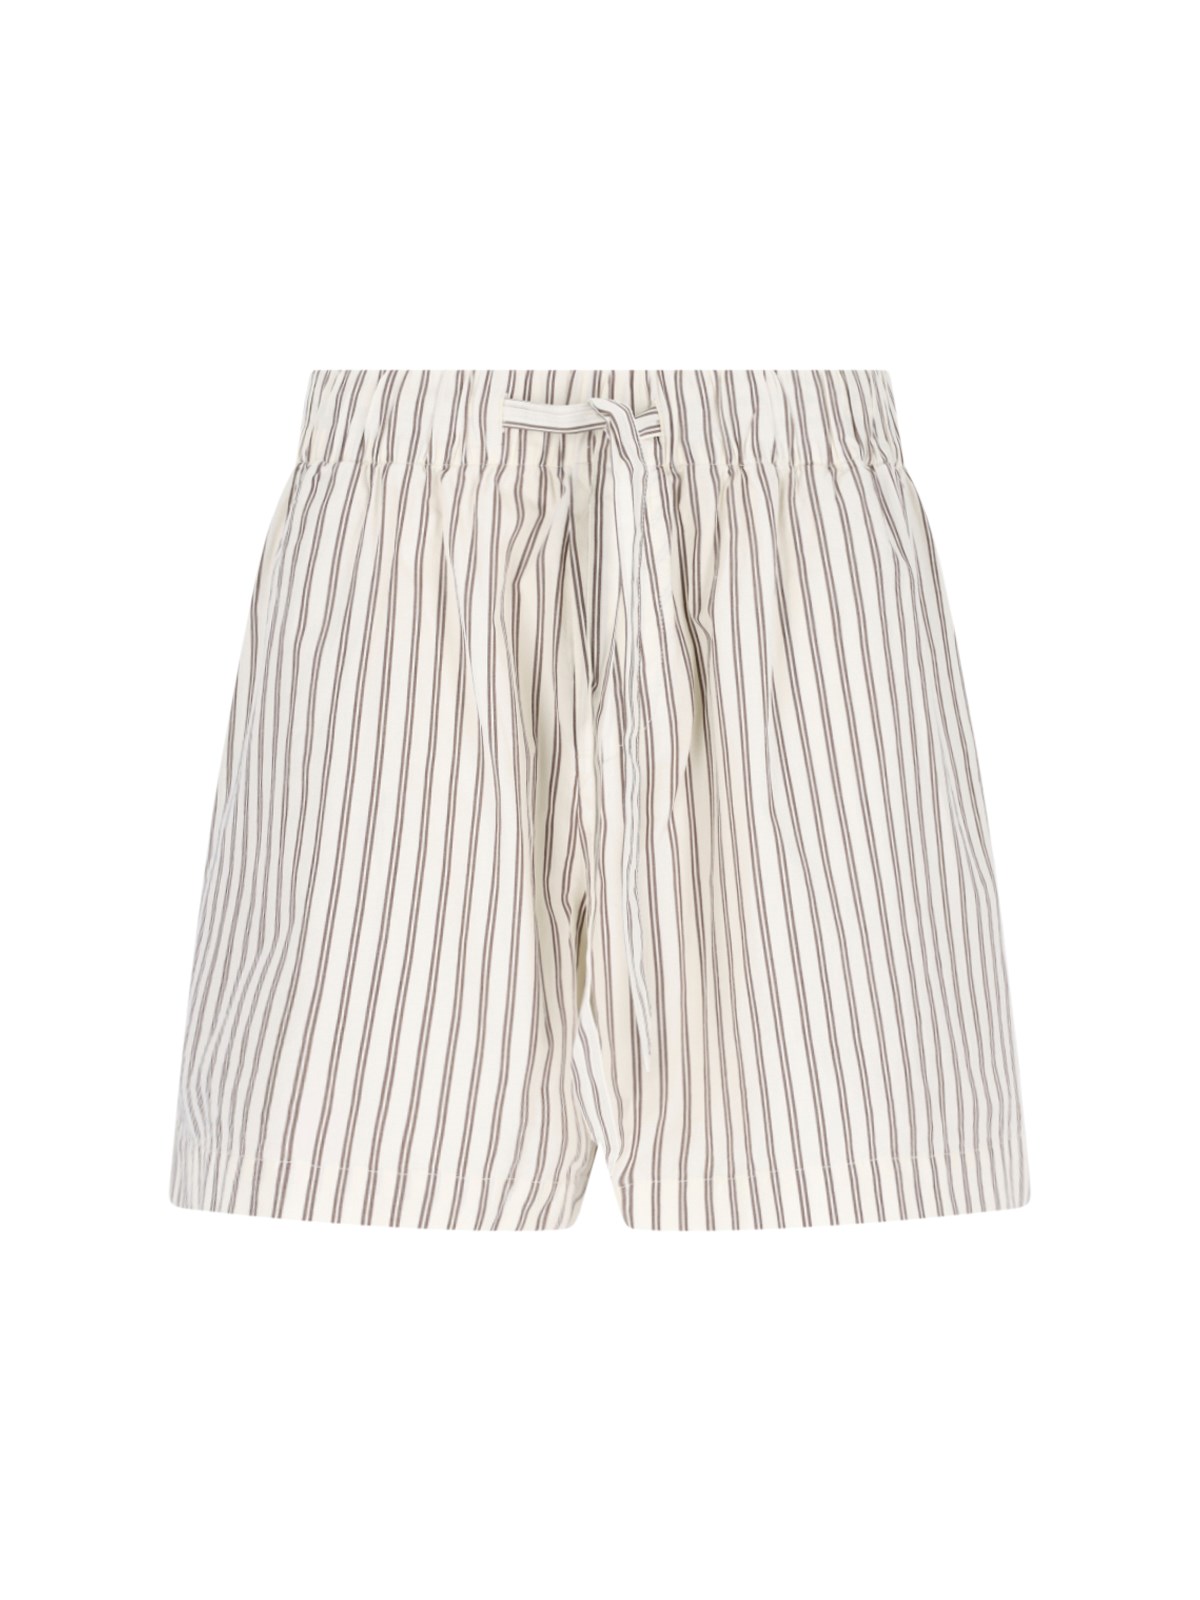 Off-White & Brown Drawstring Pyjama Shorts